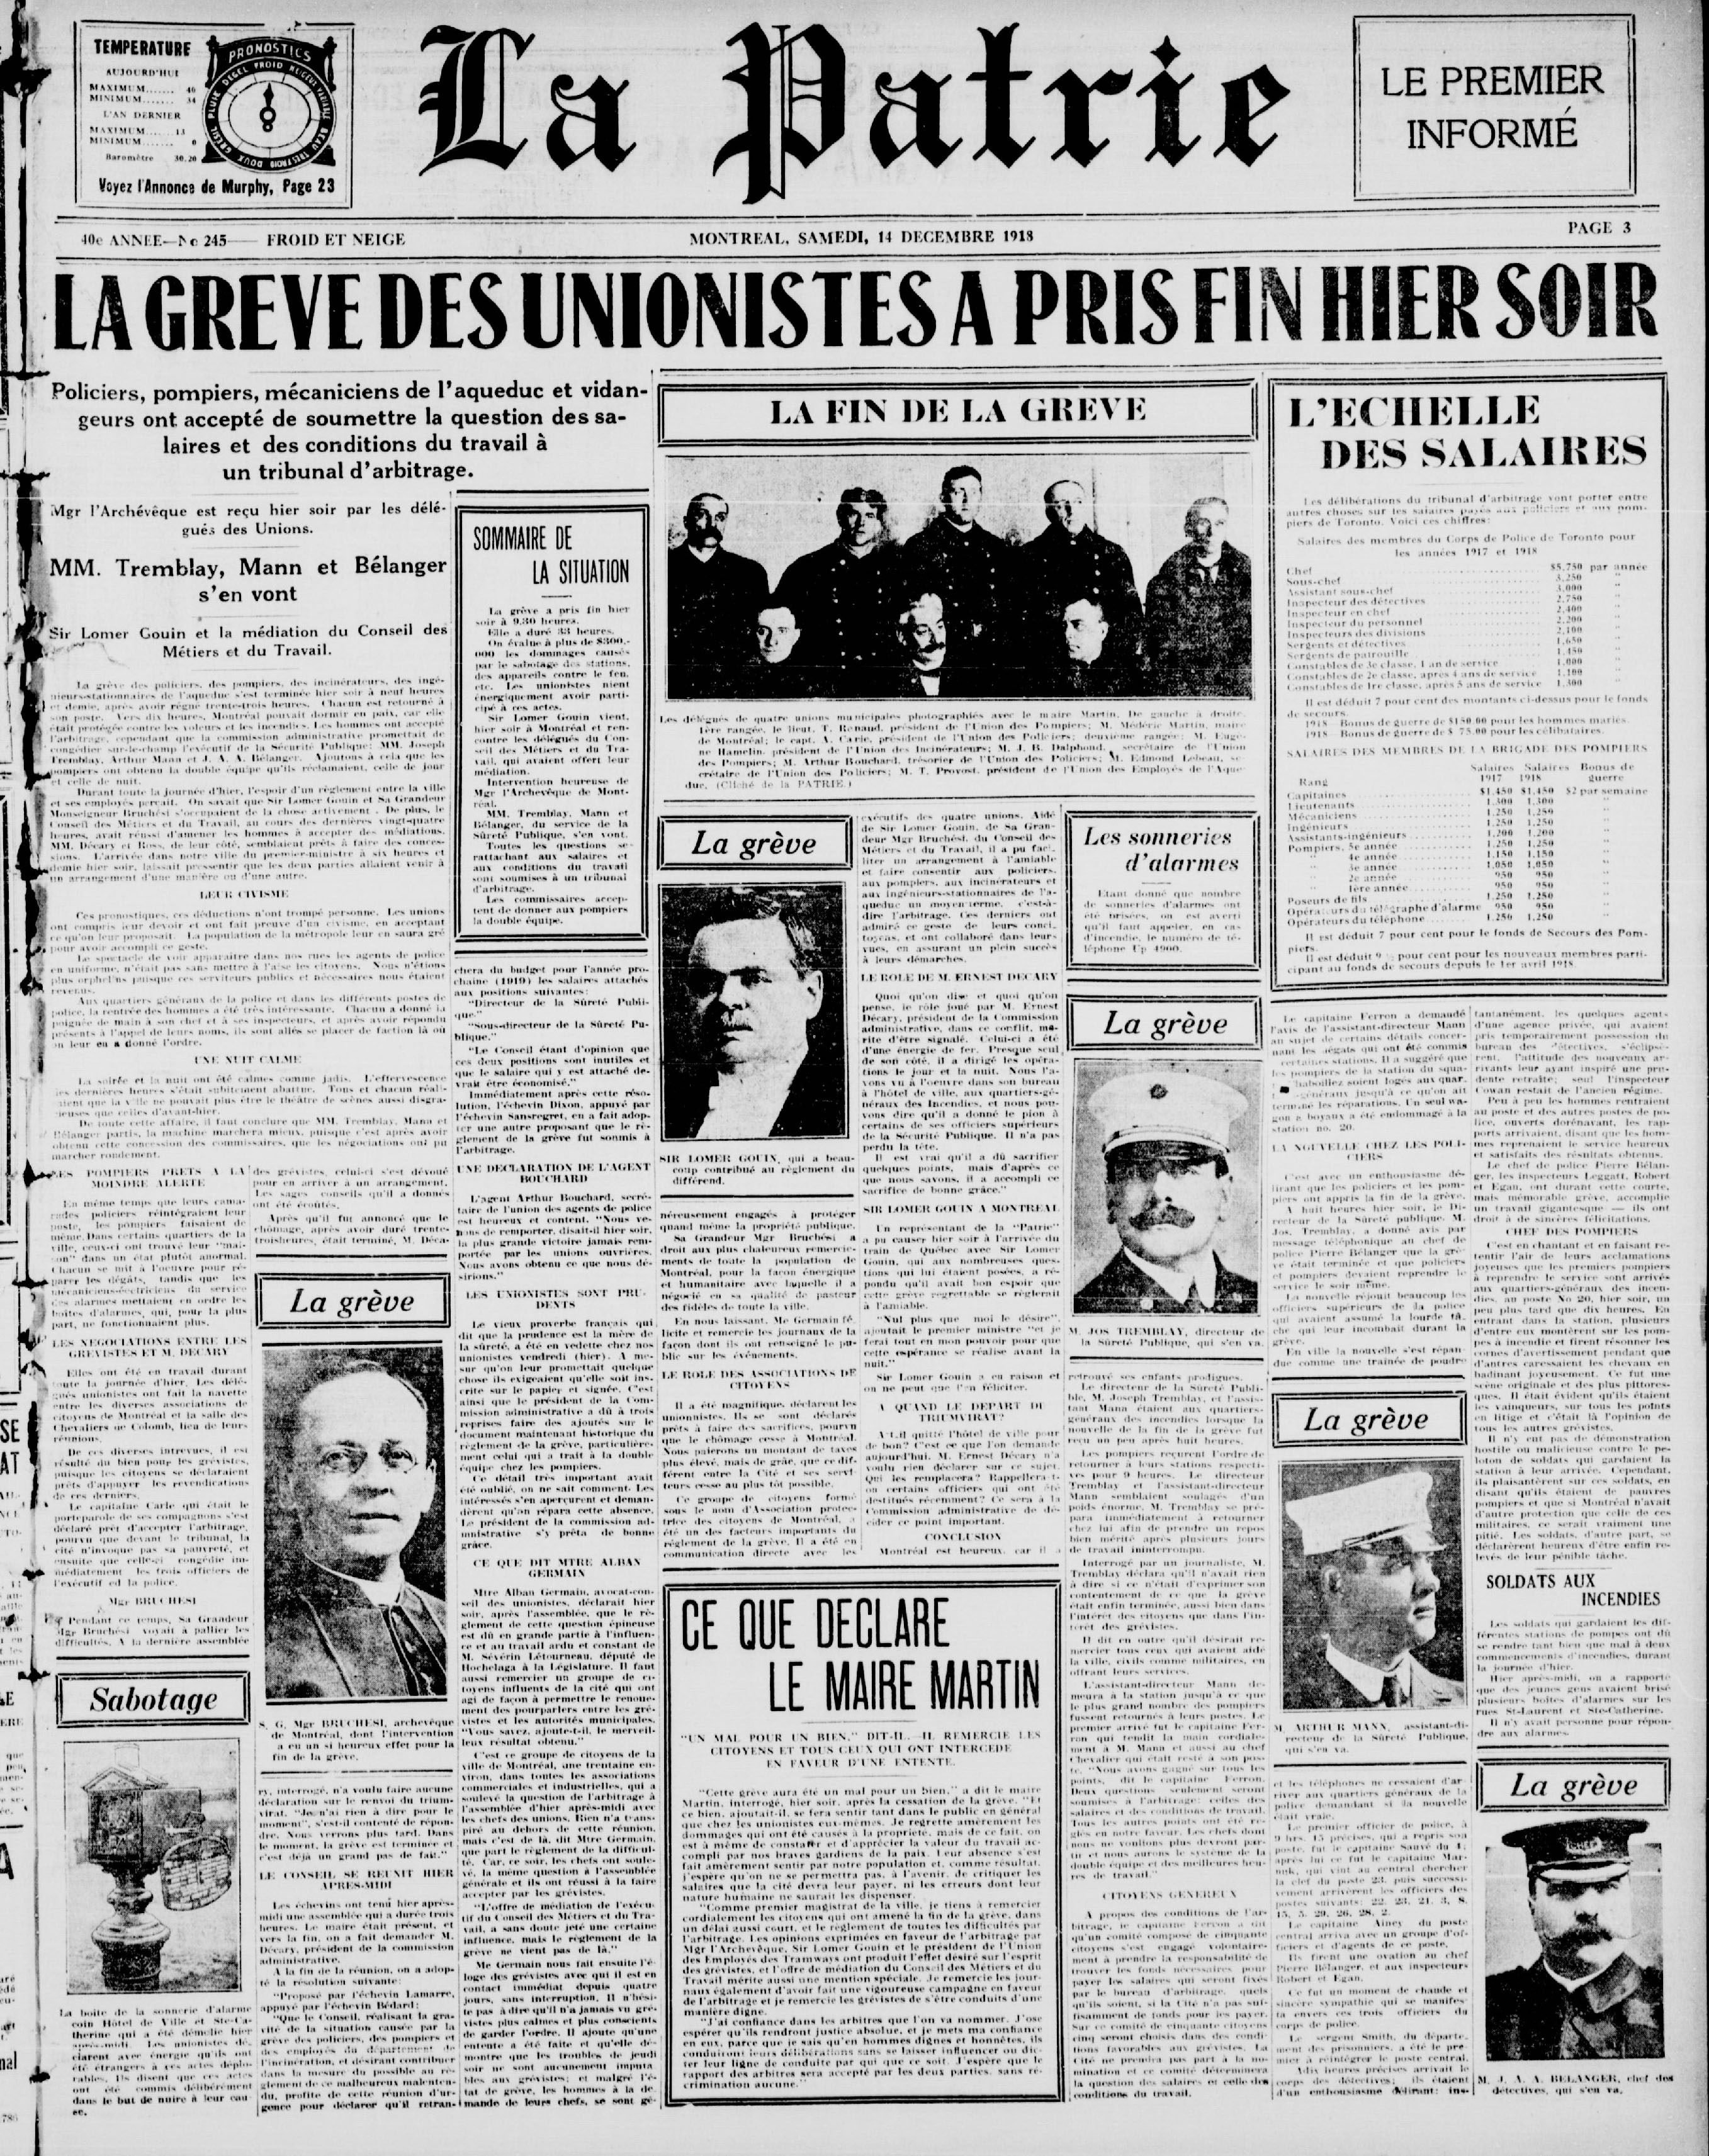 Une du journal La Patrie du 14 décembre 1918 avec en titre "La grève des unionistes a pris fin hier soir".